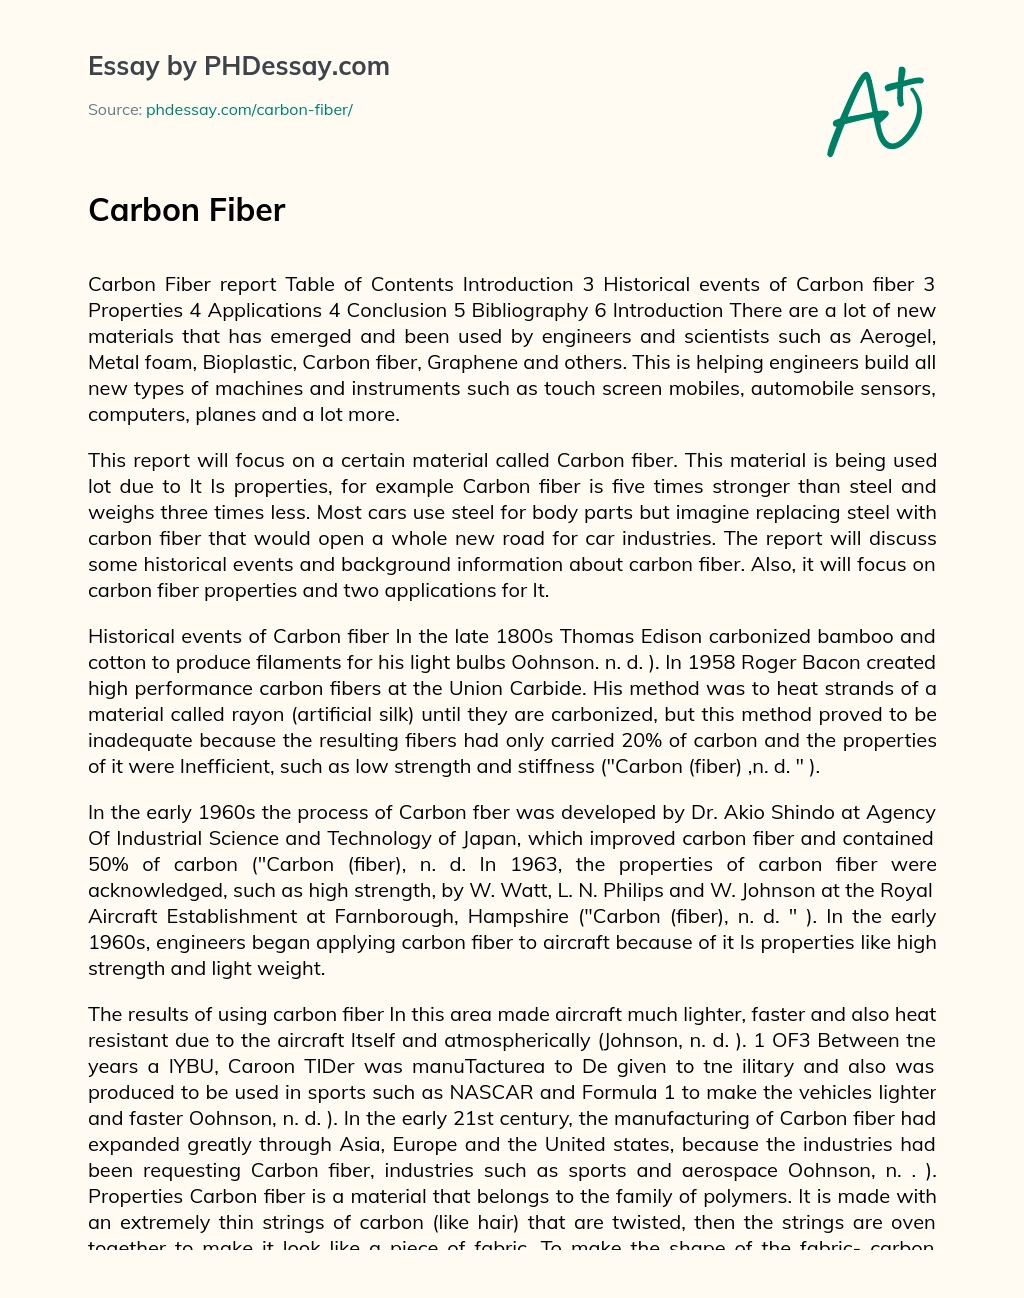 Carbon fiber essay